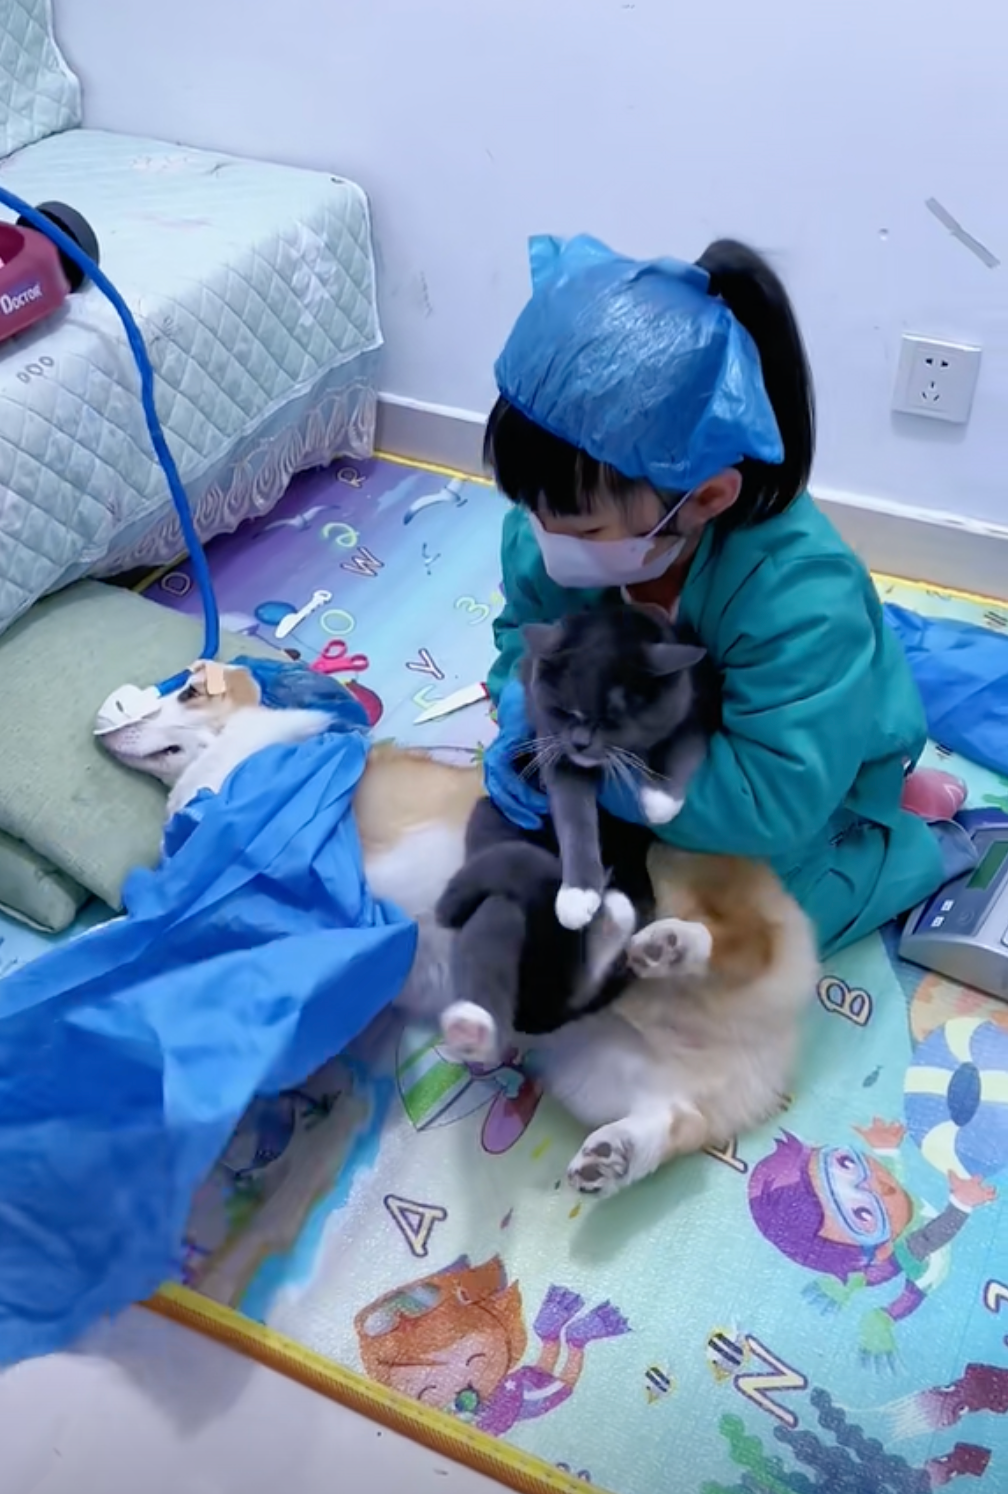 คลิปเด็กน้อยสวมบทบาทเป็นคุณหมอผ่าคลอดน้องหมา-แมว